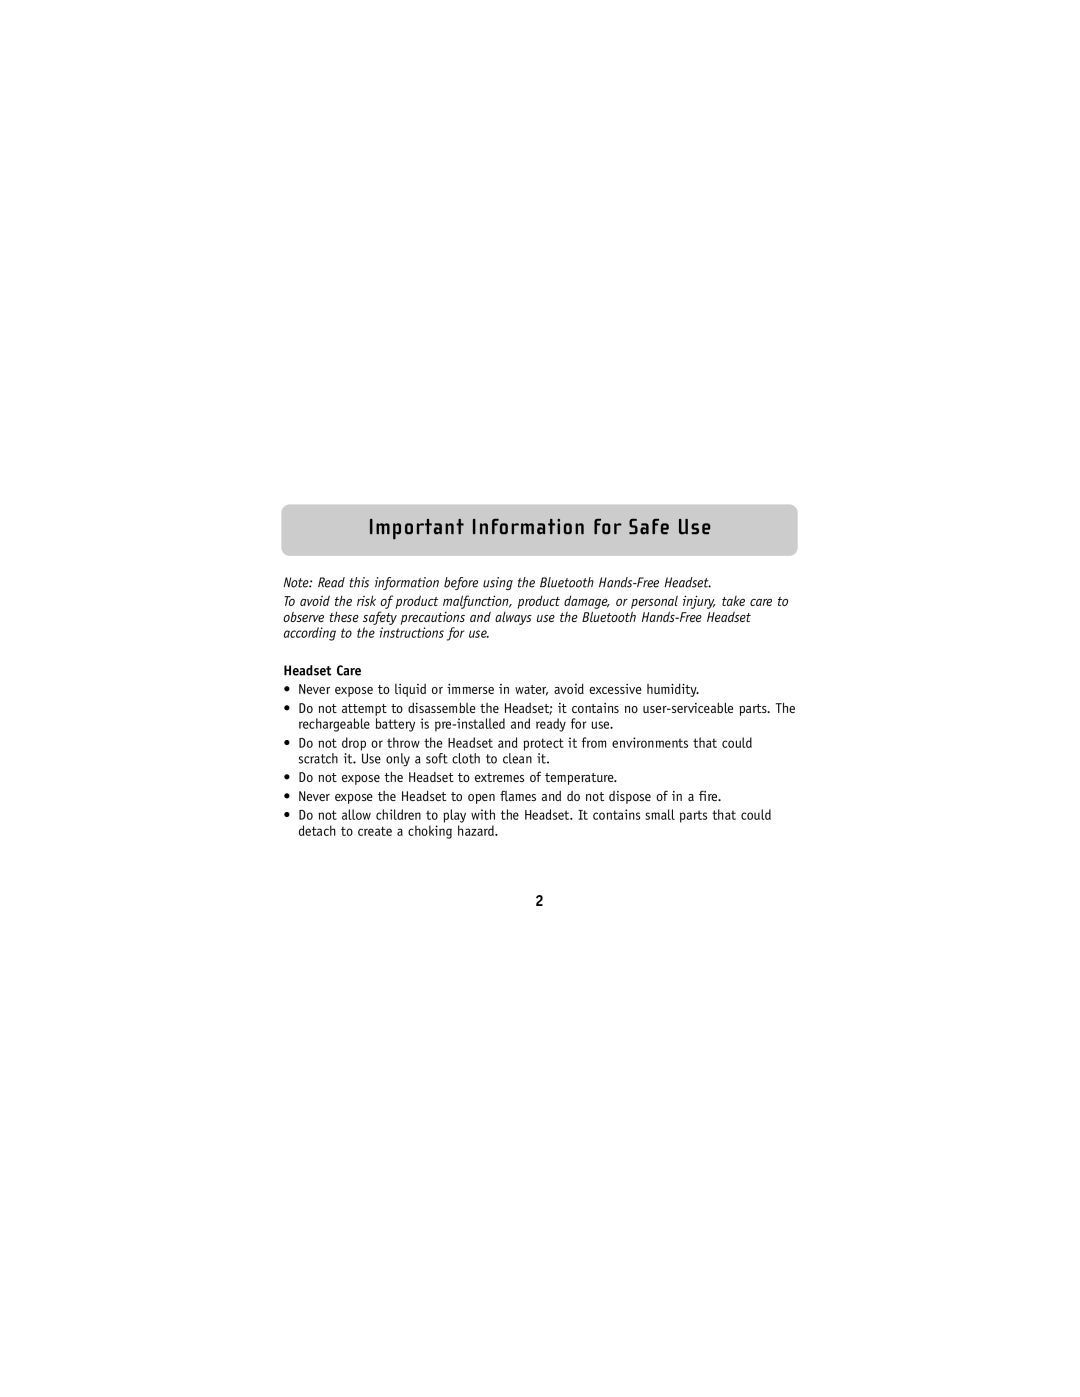 Belkin F8V9017 user manual Important Information for Safe Use, Headset Care 